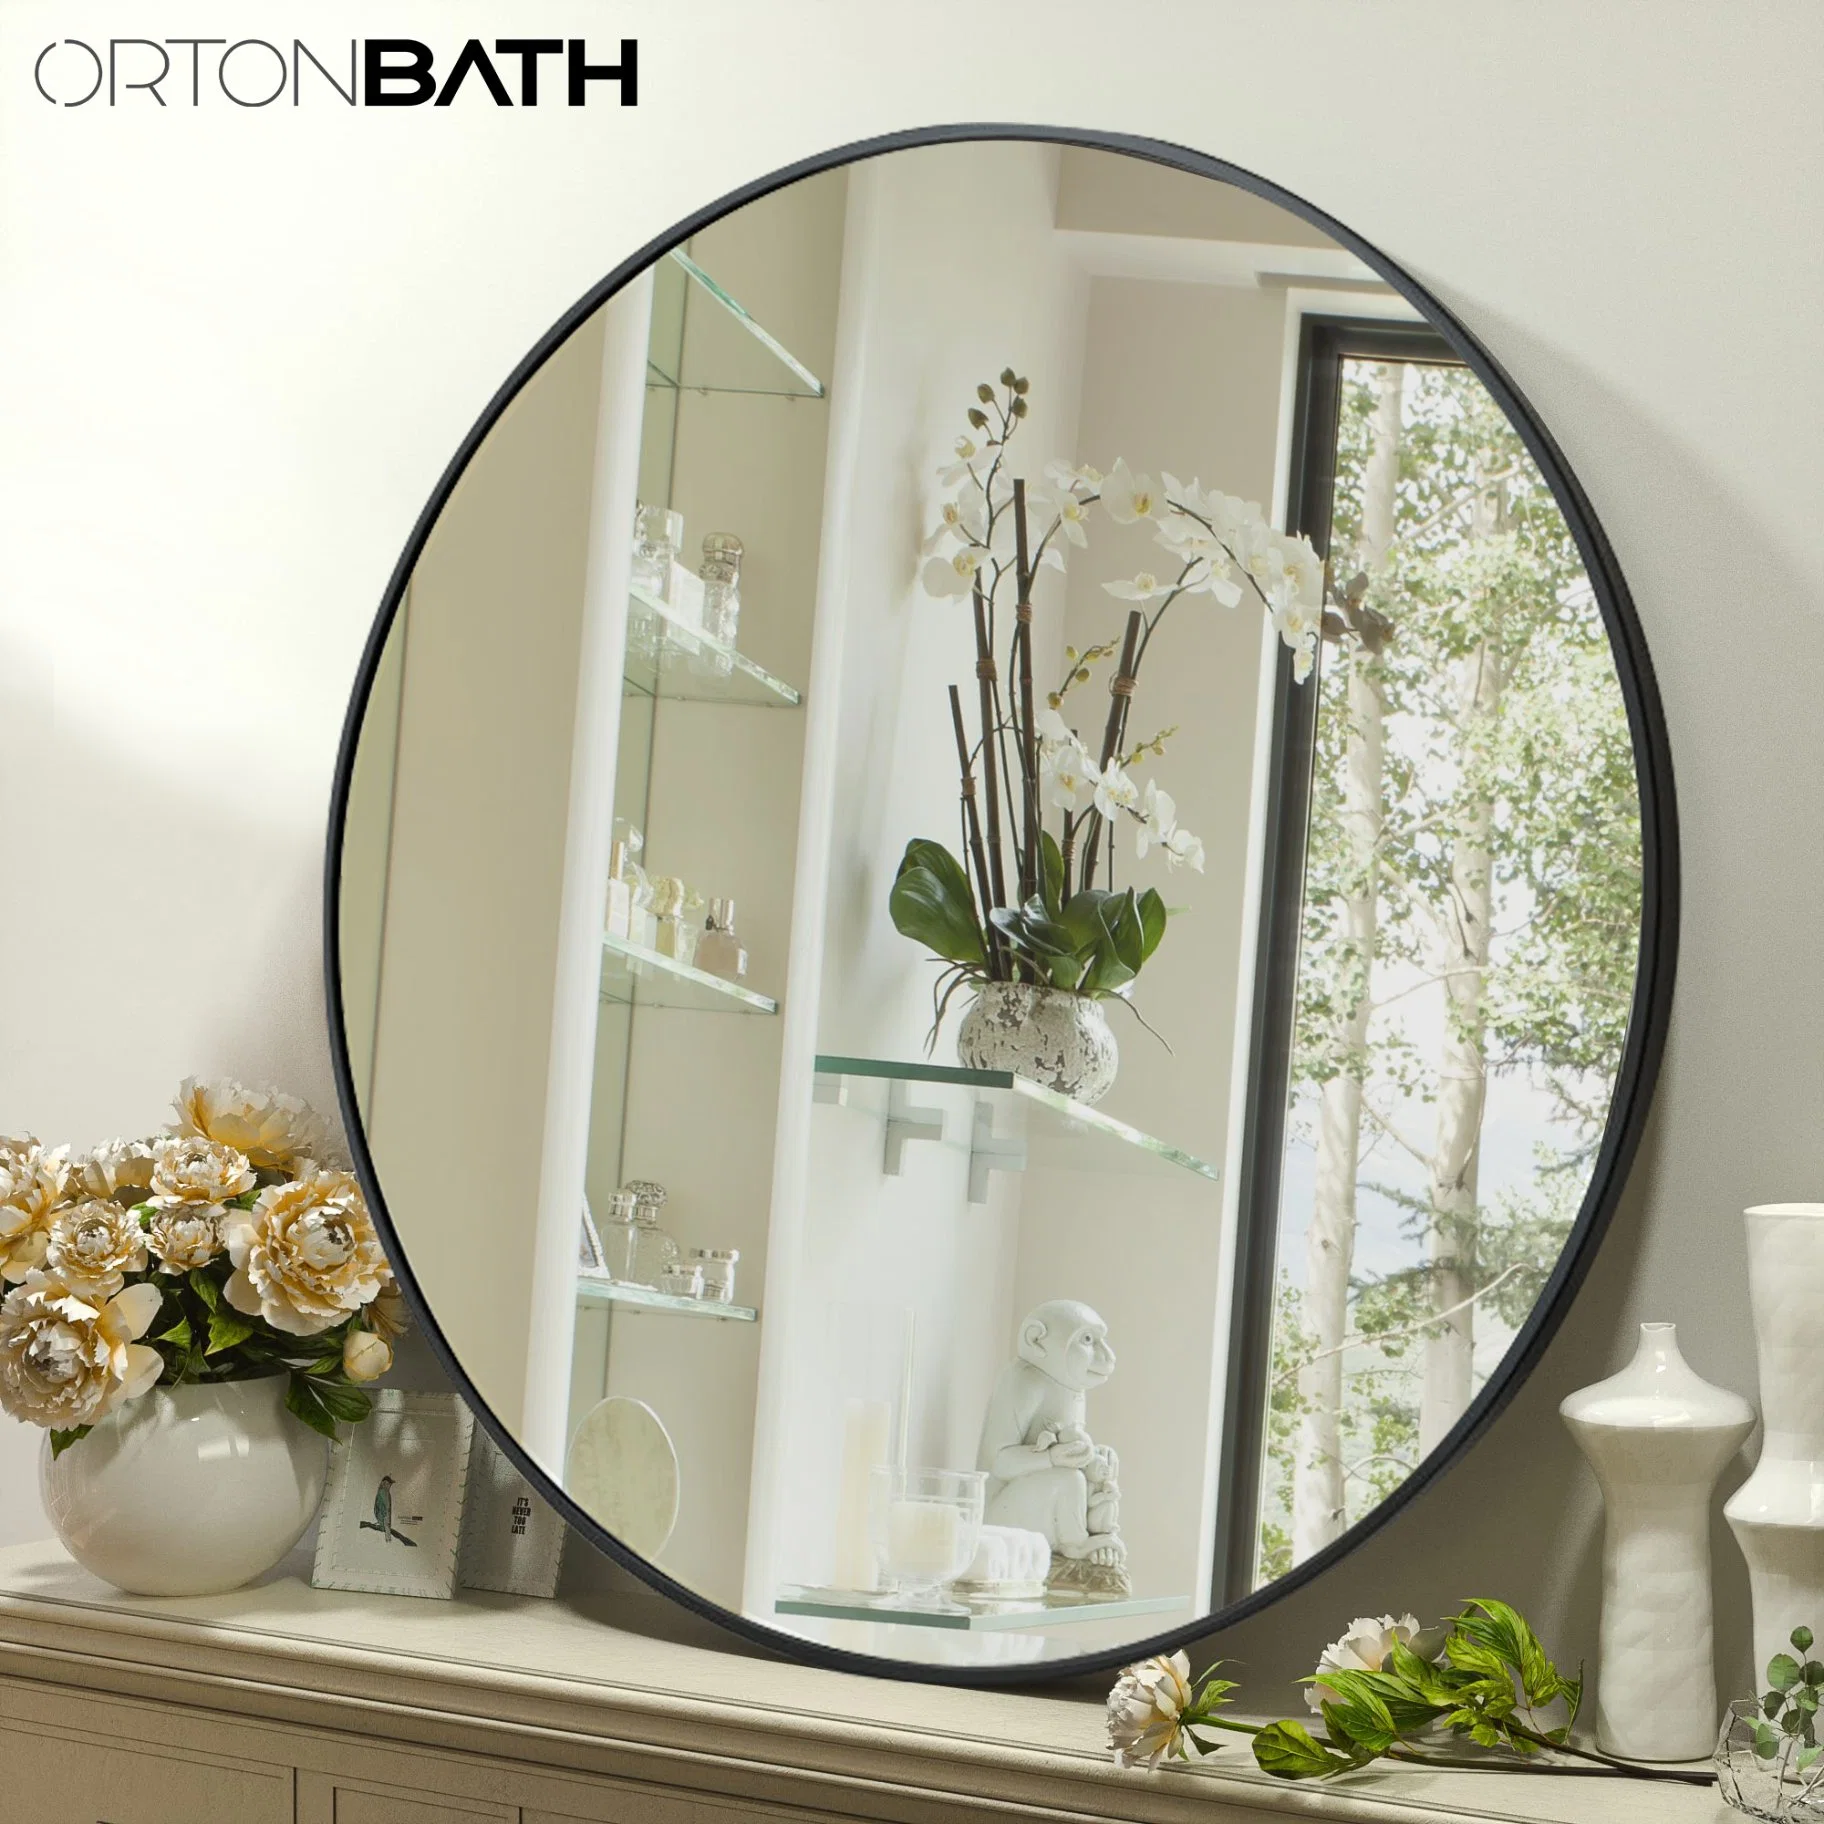 Ortonbath 20 pulgadas espejo colgante montado en la pared para el baño con Redondo Negro Metal Framer espejo redondo Vanity Circle para baño